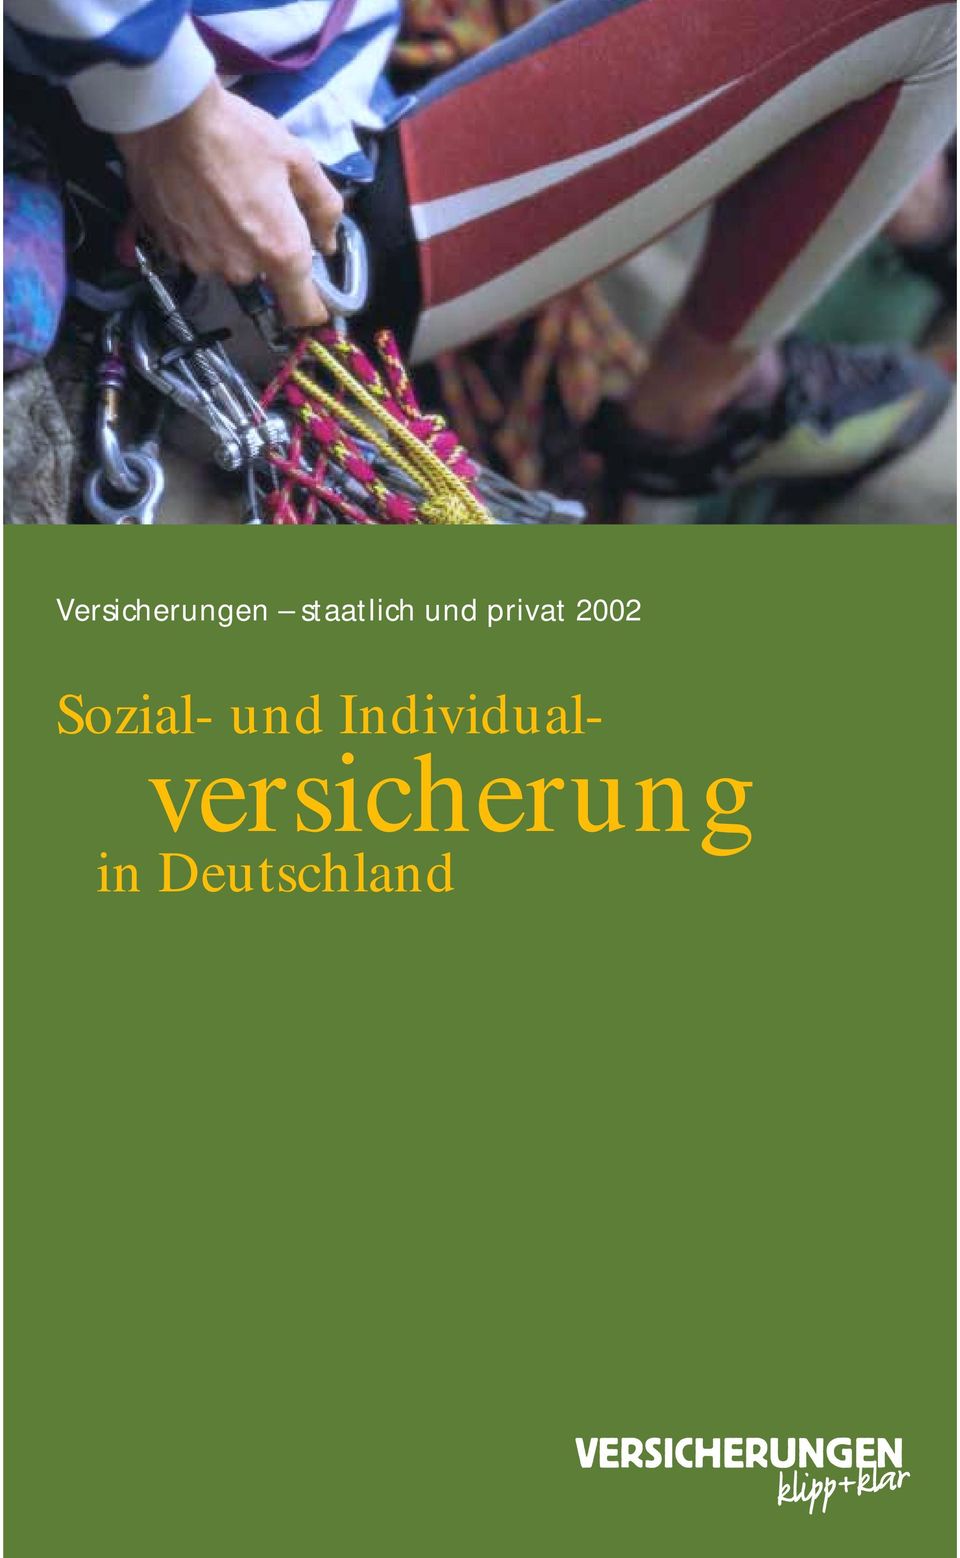 2002 Sozial- und